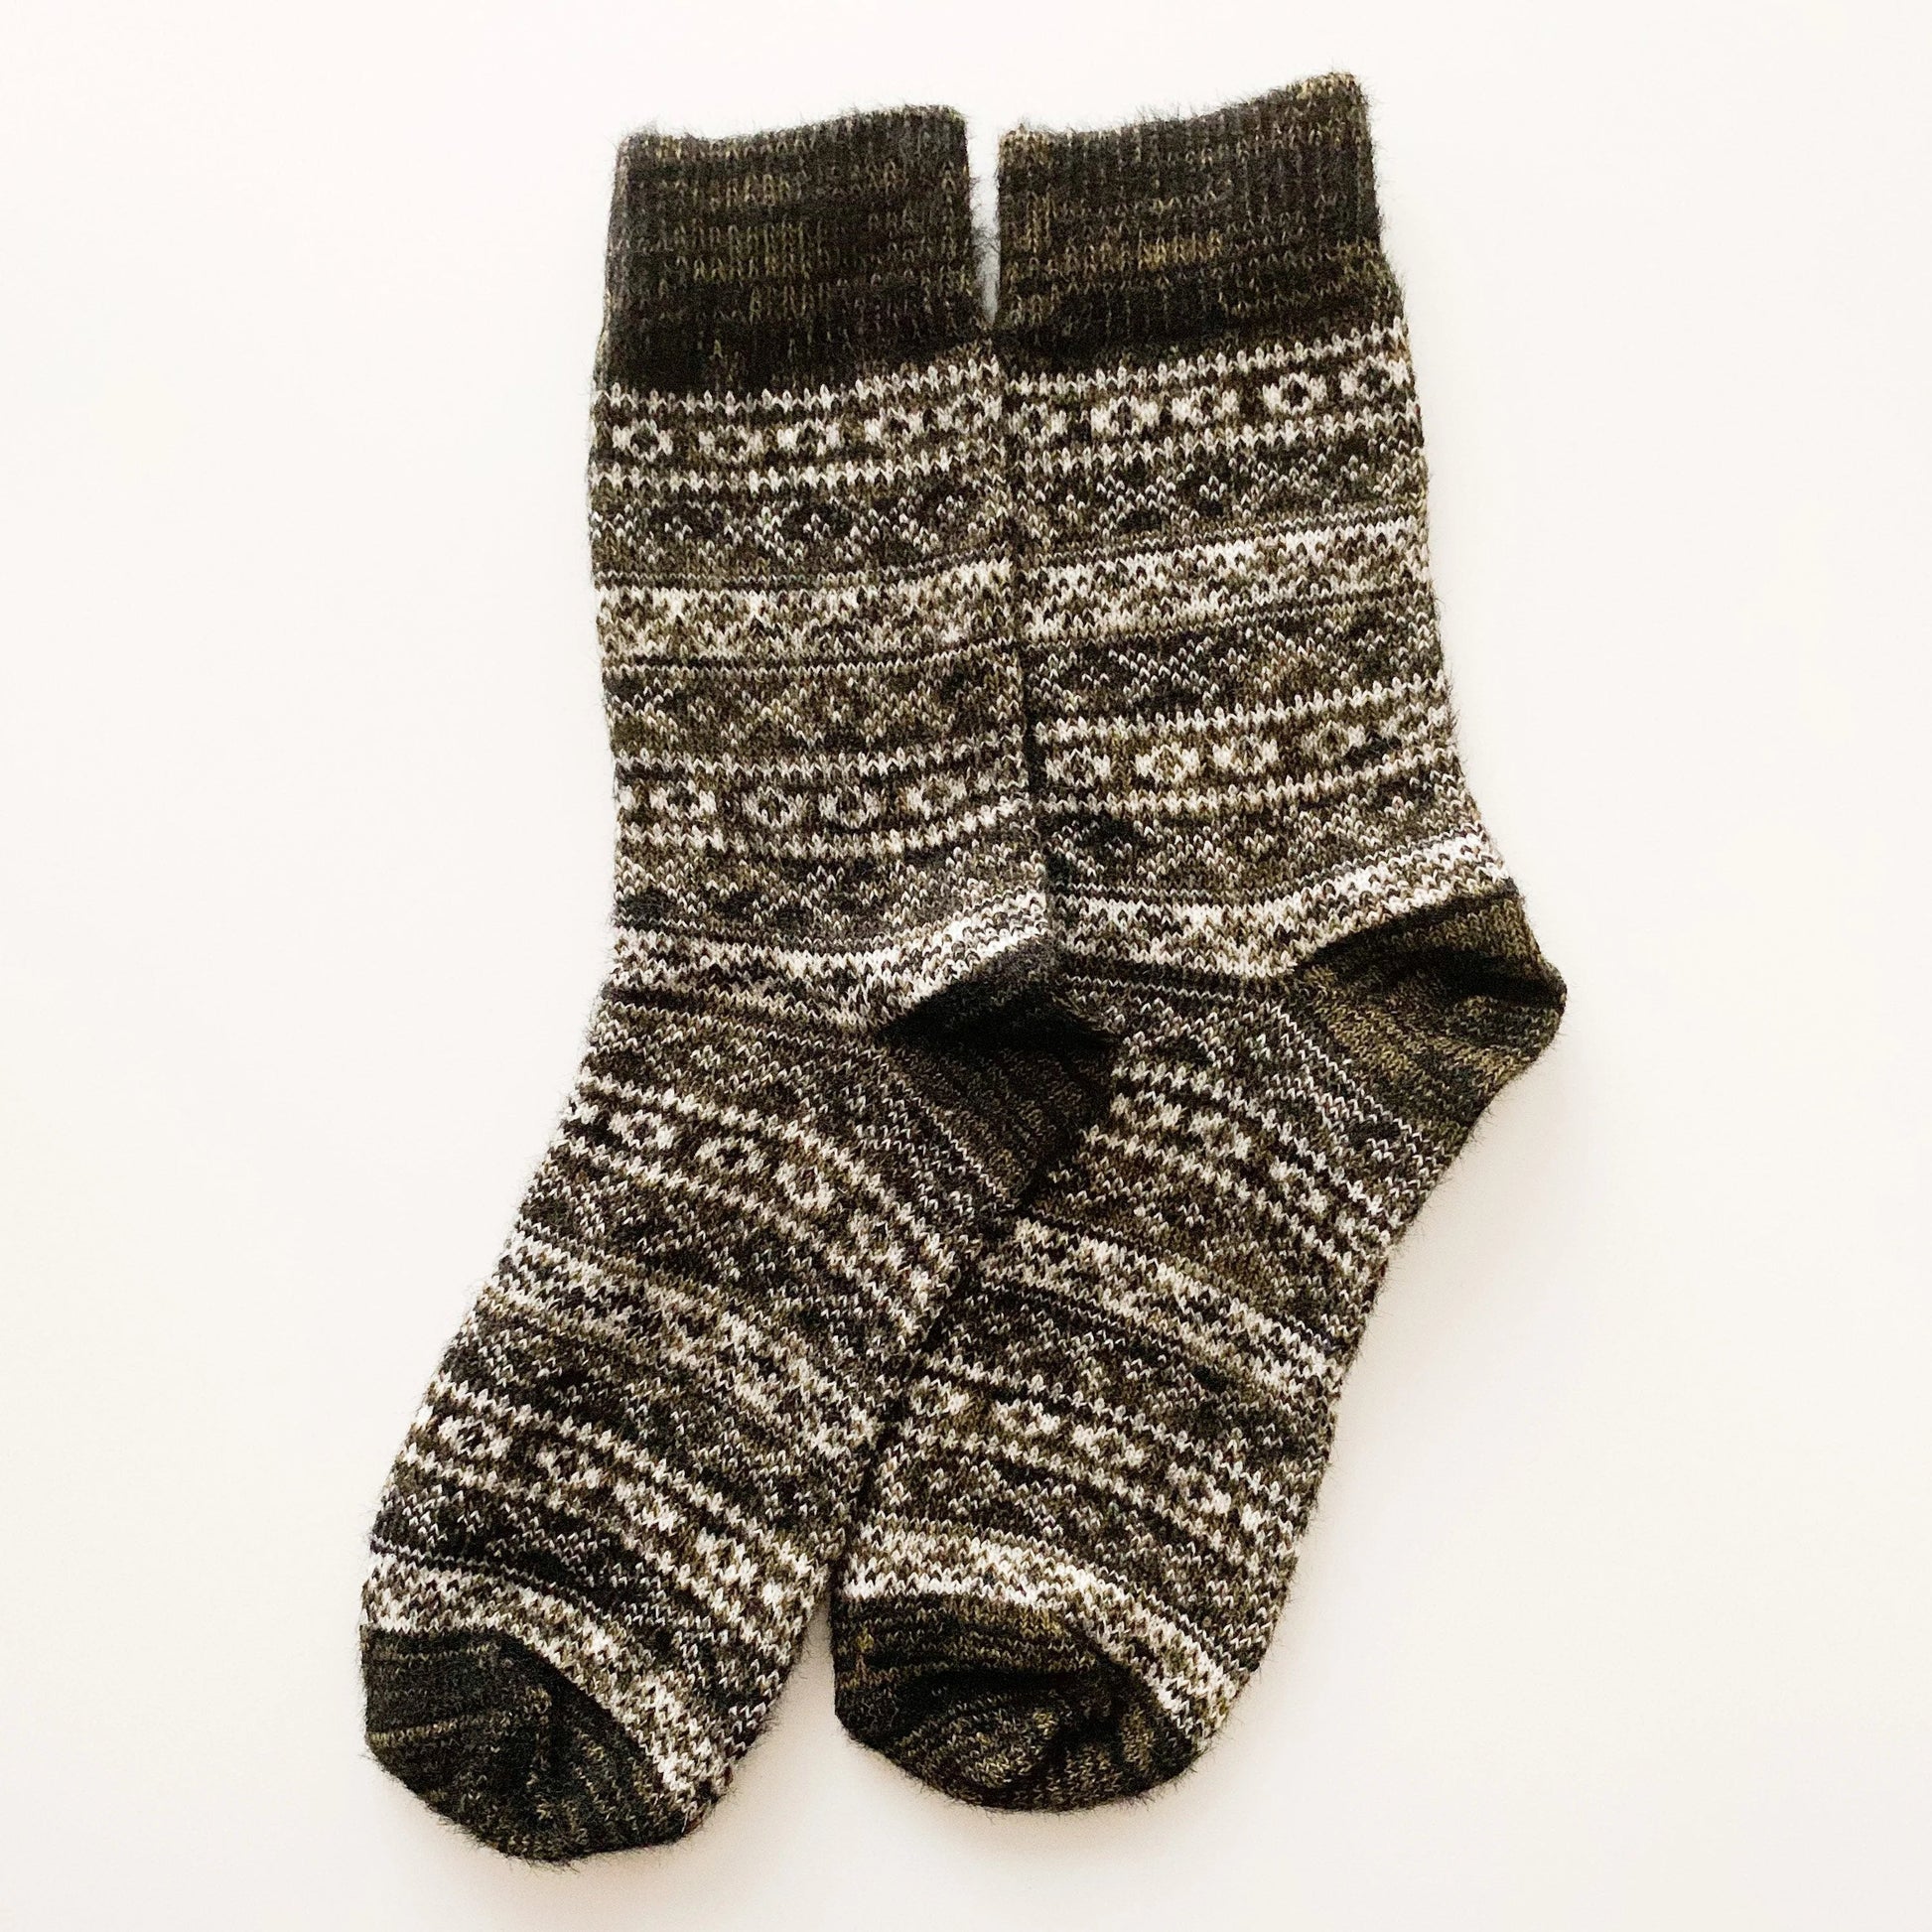 wool socks for men